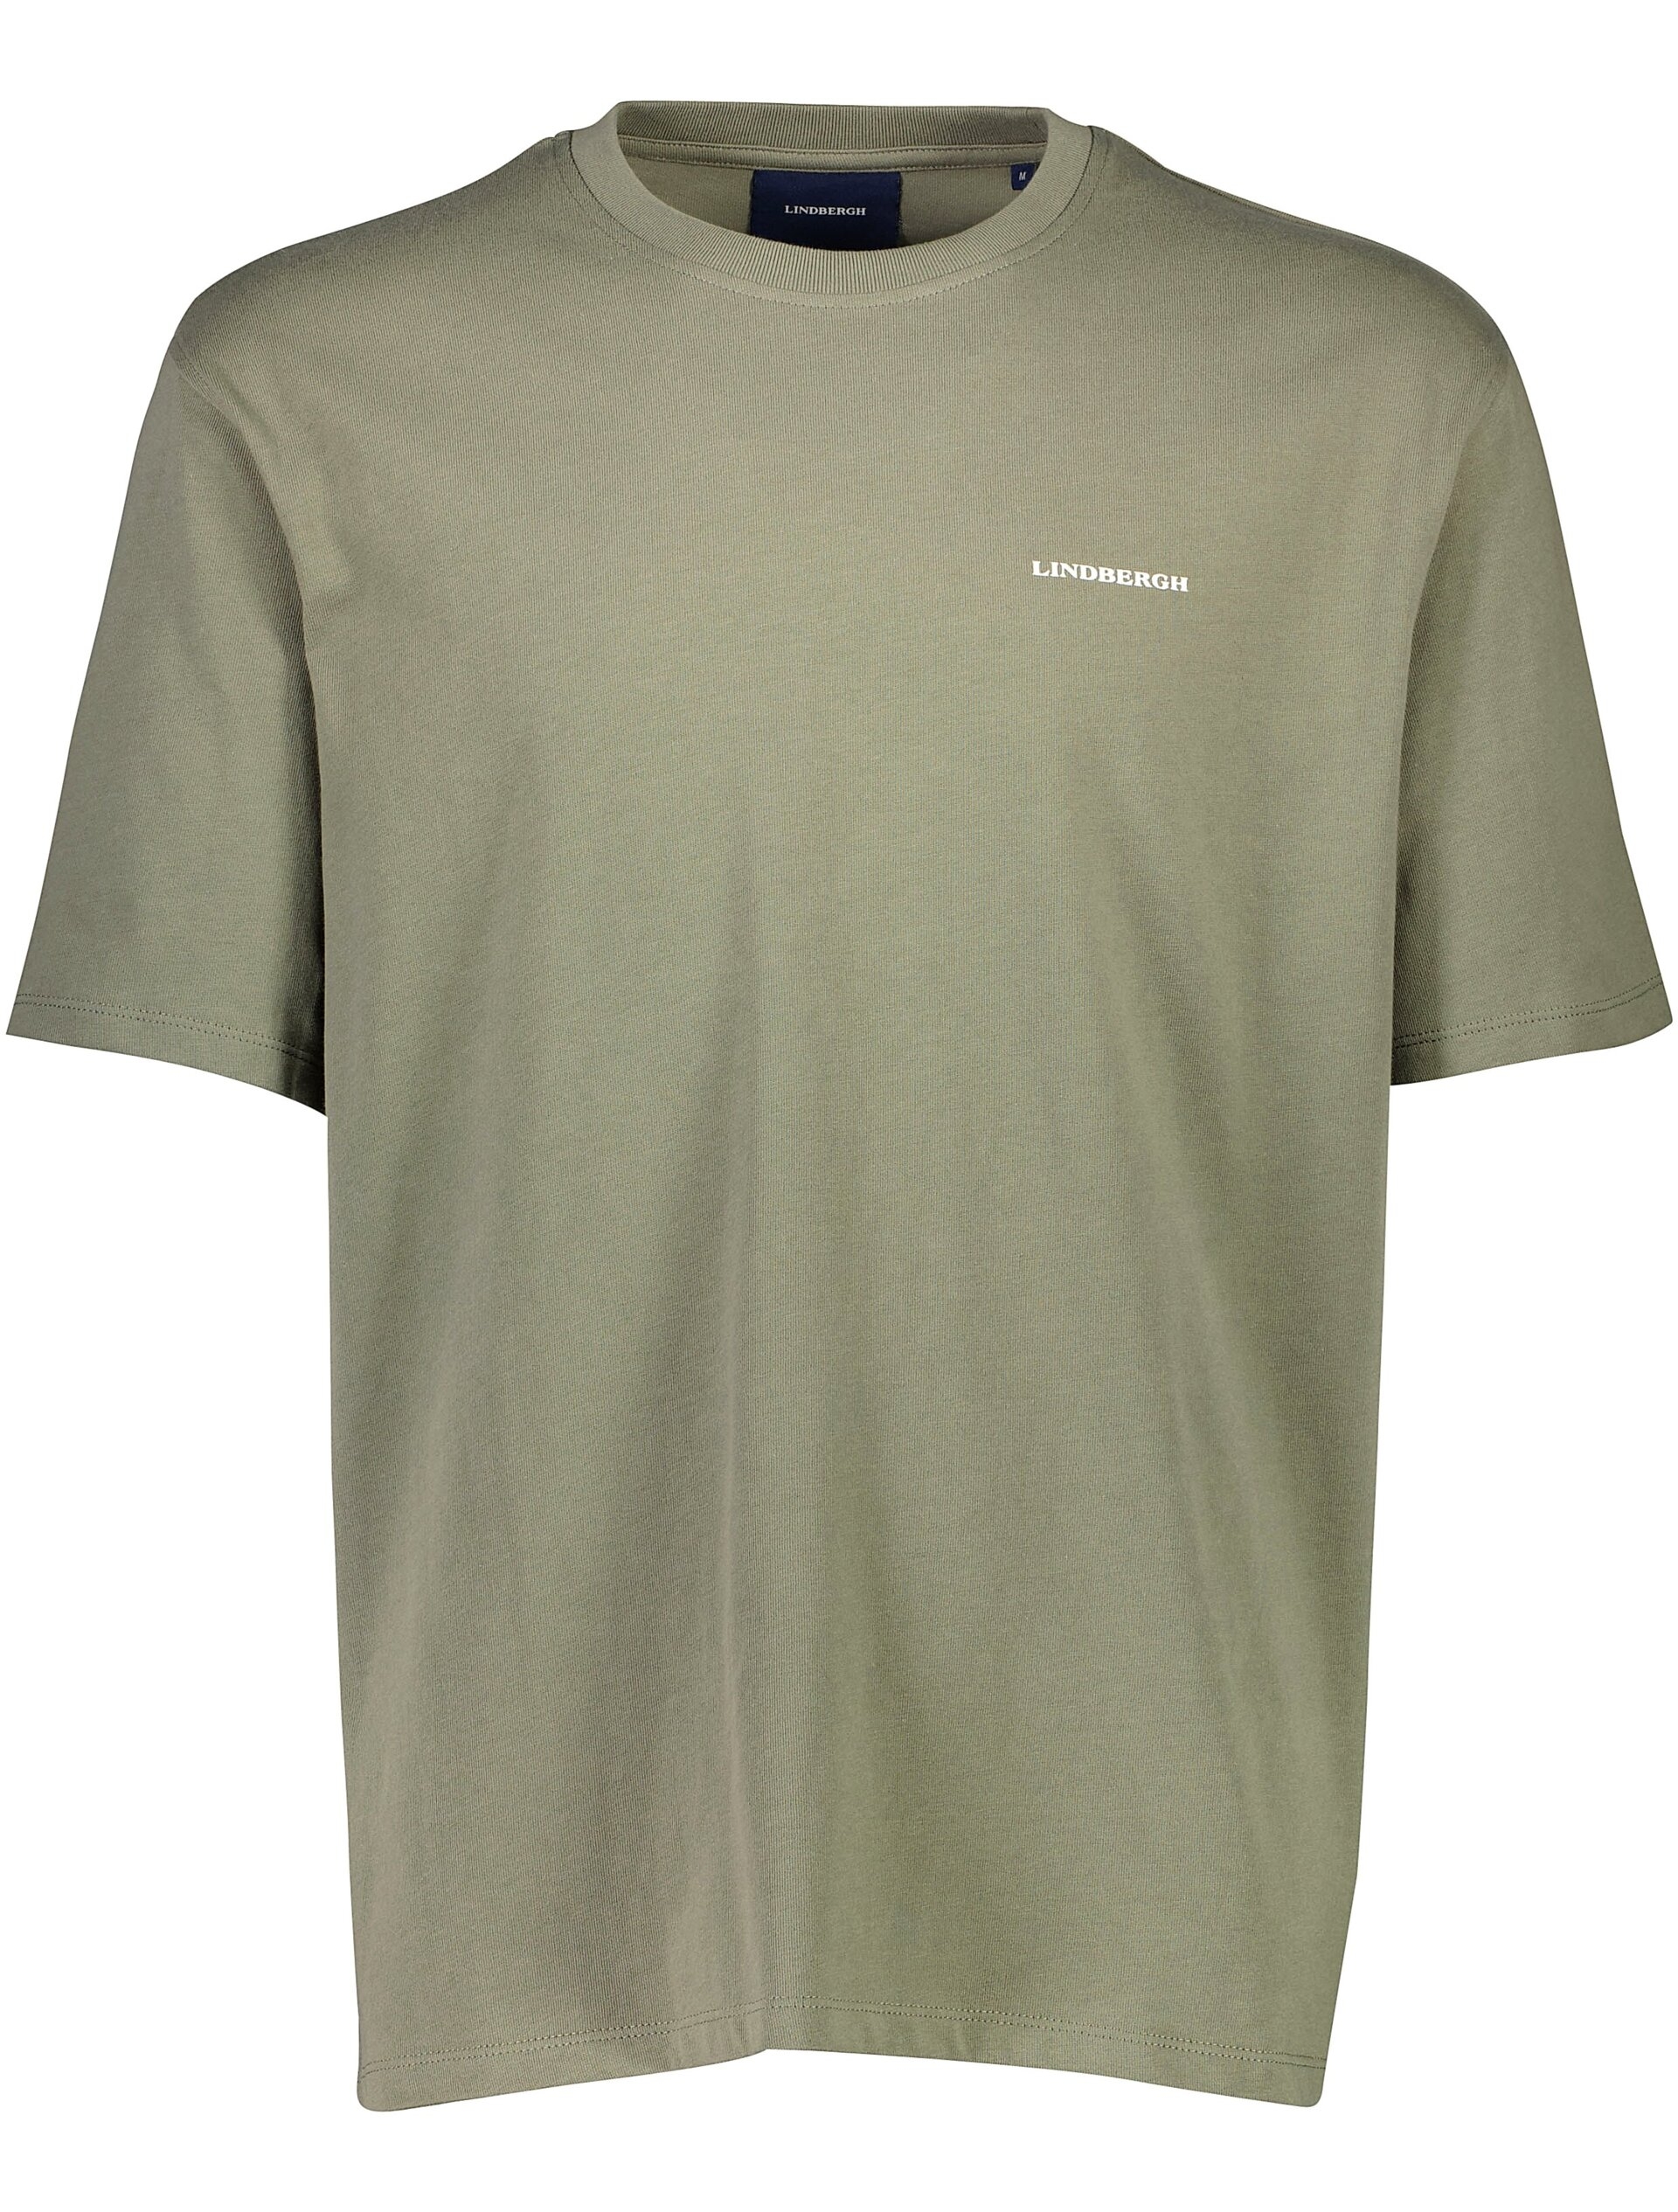 Lindbergh T-shirt grün / lt dusty army